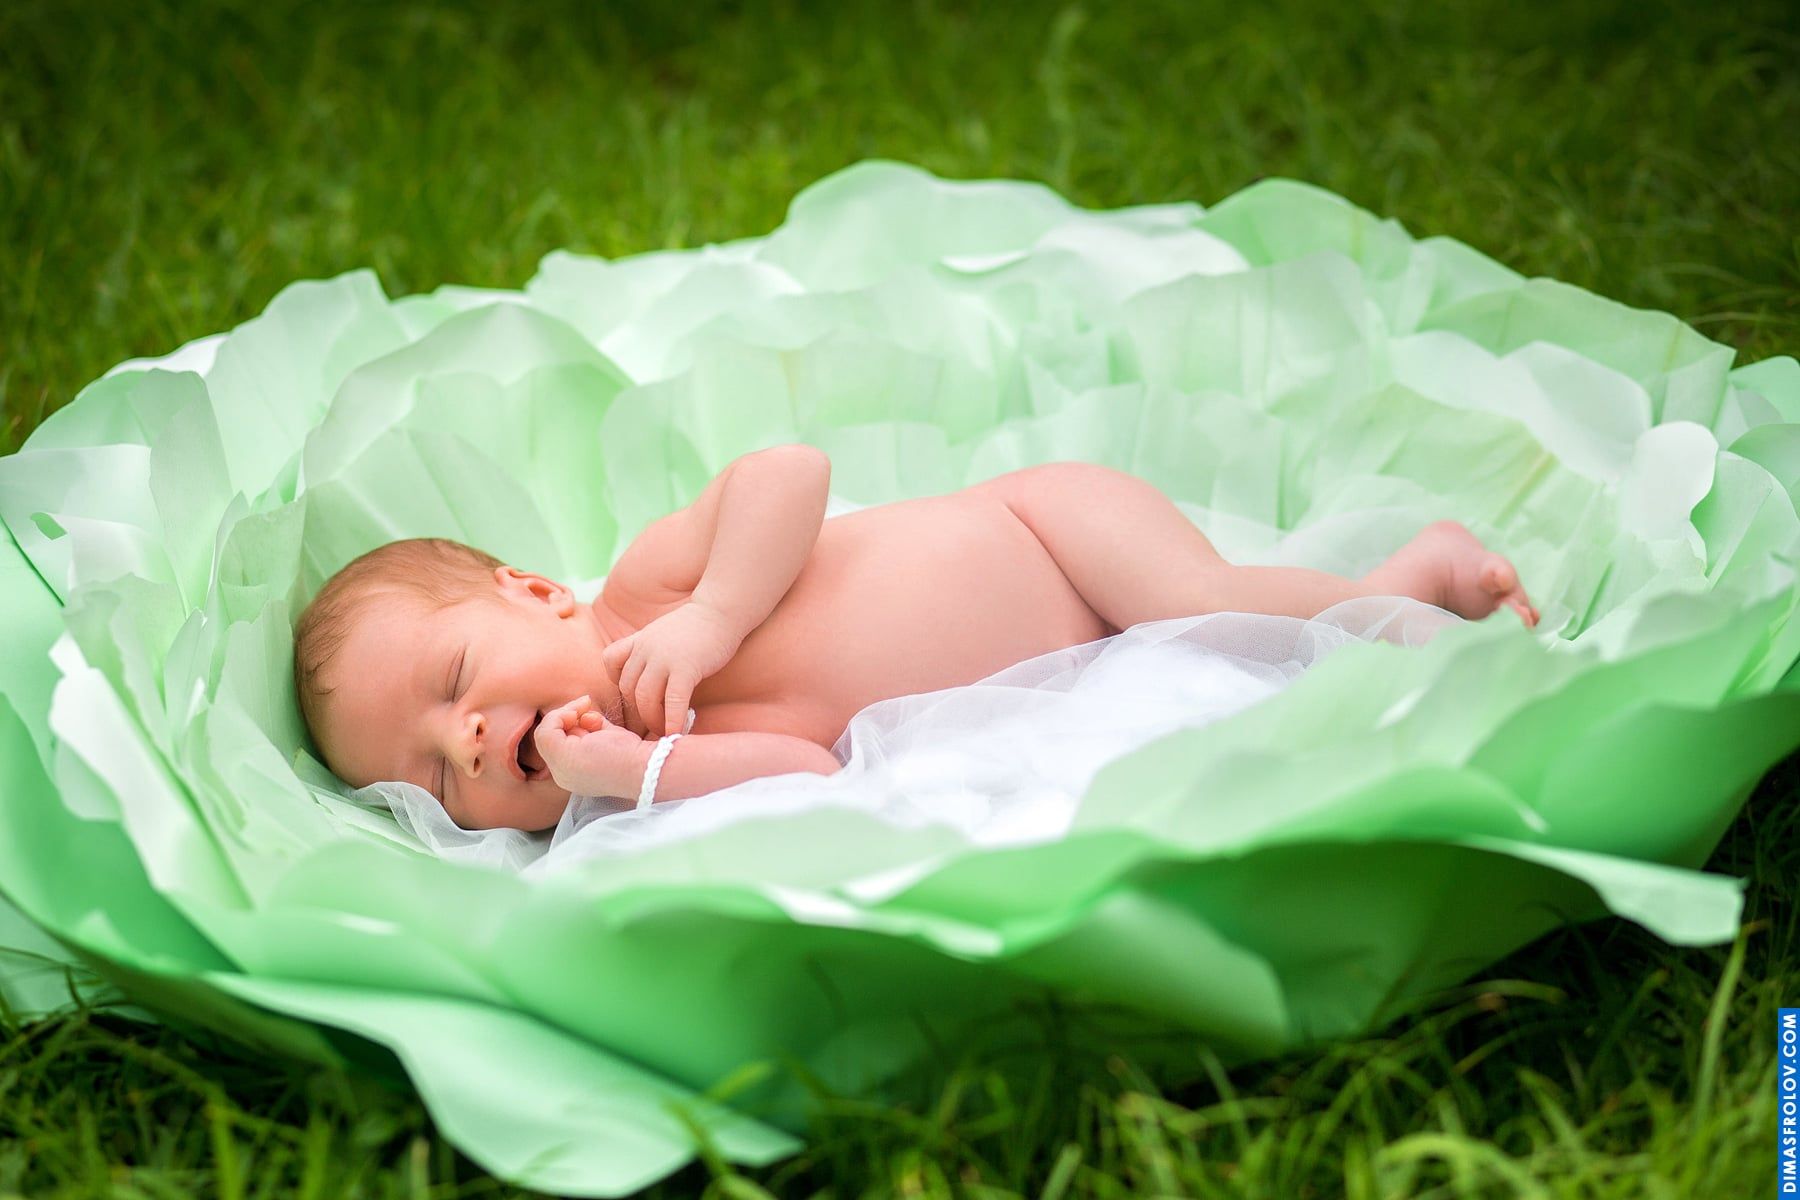 คลอดบุตร, การถ่ายภาพทารกแรกเกิด. photo1 DP7A8221468befa4ef. Dimas Frolov. Koh Samui Photographer. DimasFrolov.com